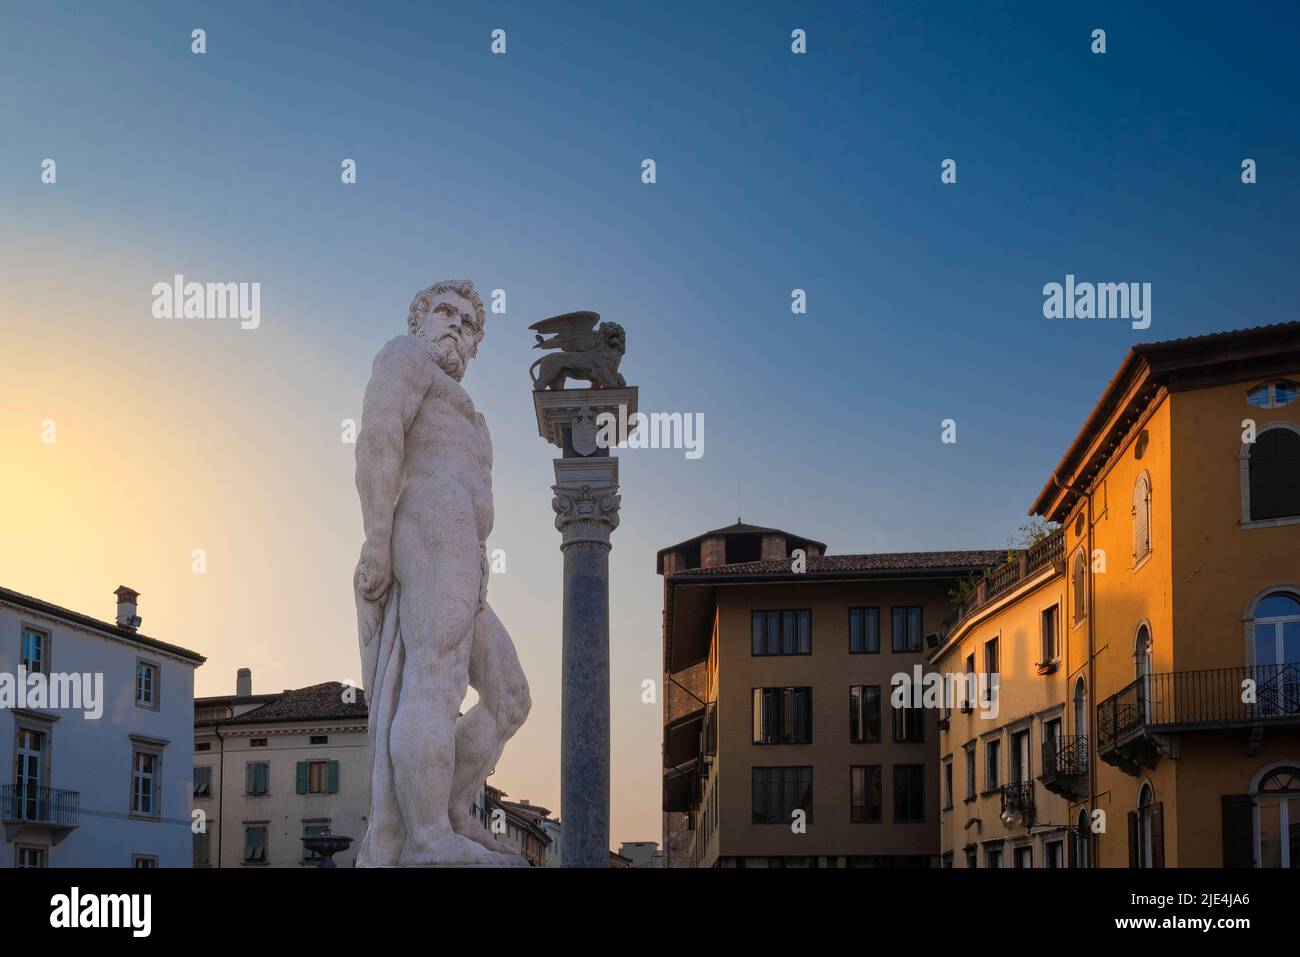 Statua di Ercole al centro di una piazza italiana all'alba. Piazza della Libertà, Udine, Friuli Venezia Giulia, Italia. Foto Stock